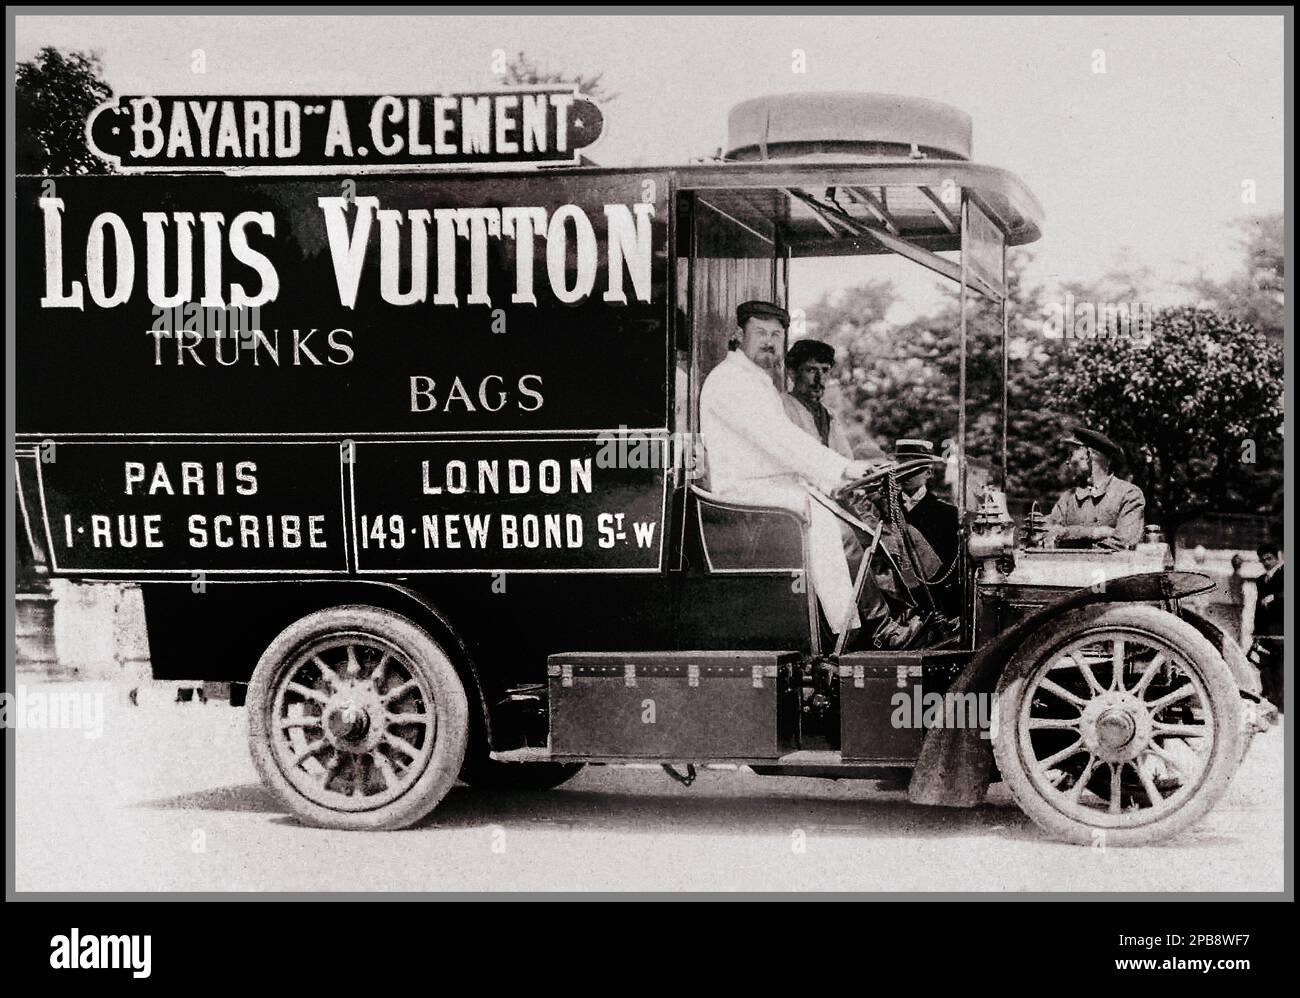 Vintage Louis Vuitton livraison de véhicule 1906 par les marchands BAYARD A CLÉMENT Paris Londres Luxe Voyages Trunks sacs Historique 1900s Français Paris France Banque D'Images